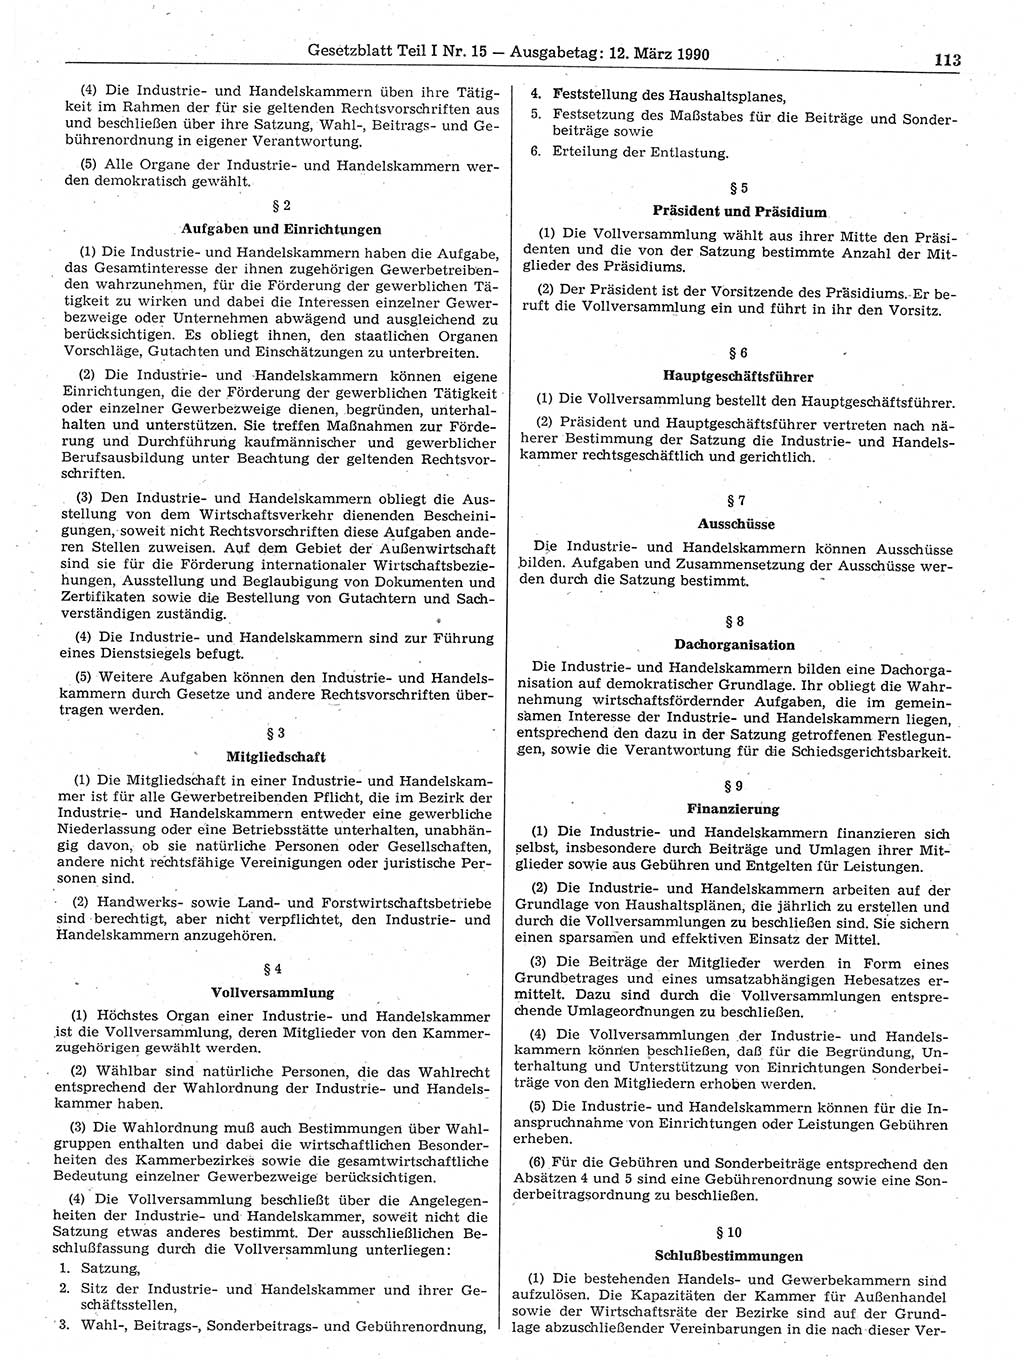 Gesetzblatt (GBl.) der Deutschen Demokratischen Republik (DDR) Teil Ⅰ 1990, Seite 113 (GBl. DDR Ⅰ 1990, S. 113)